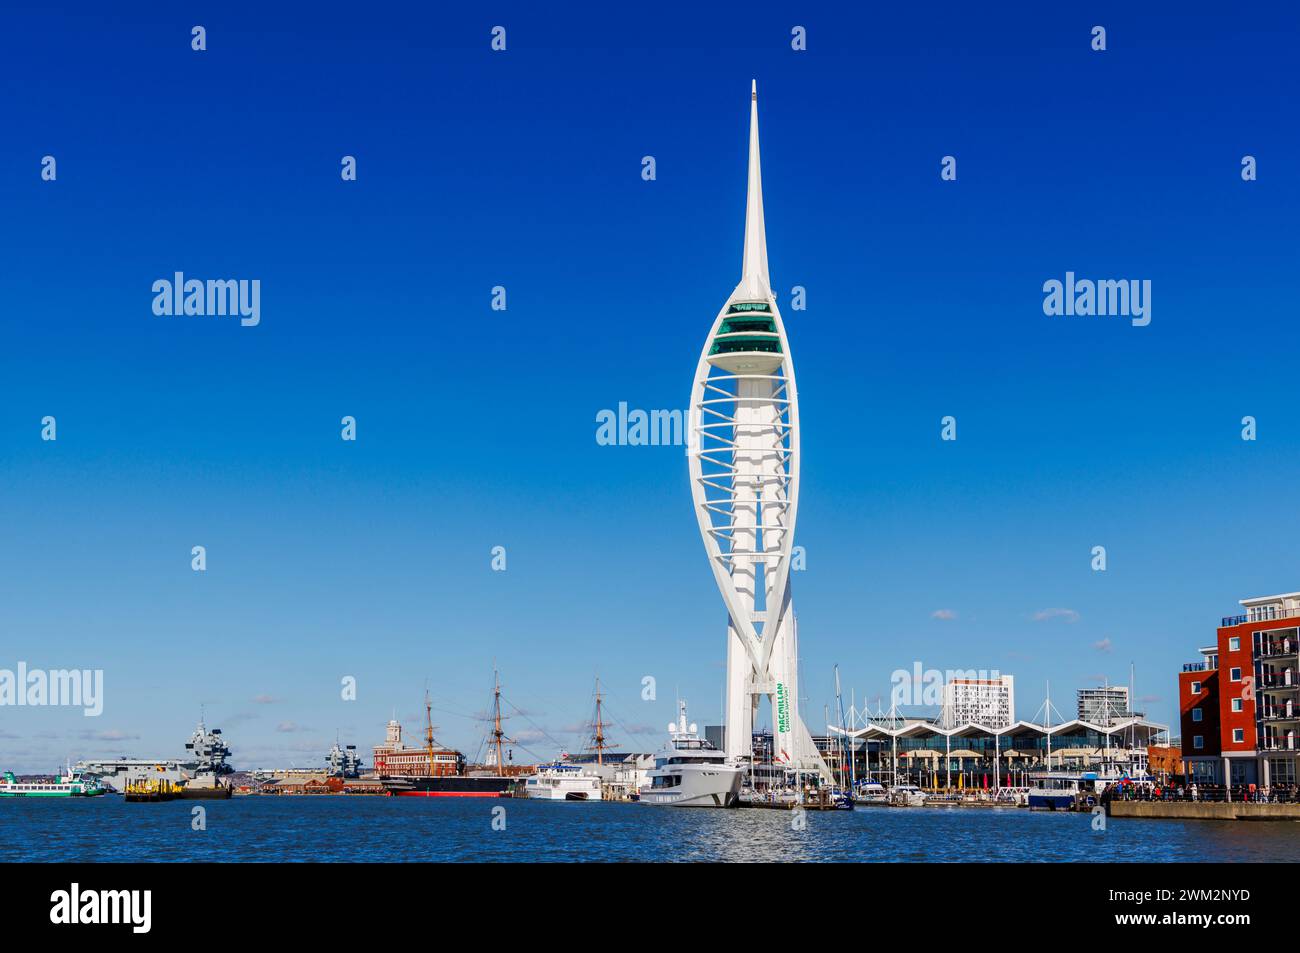 Vue sur le front de mer dans le port de Portsmouth avec la tour Spinnaker dans Gunwharf Quays et le chantier naval historique, Portsmouth, Hampshire, côte sud de l'Angleterre Banque D'Images